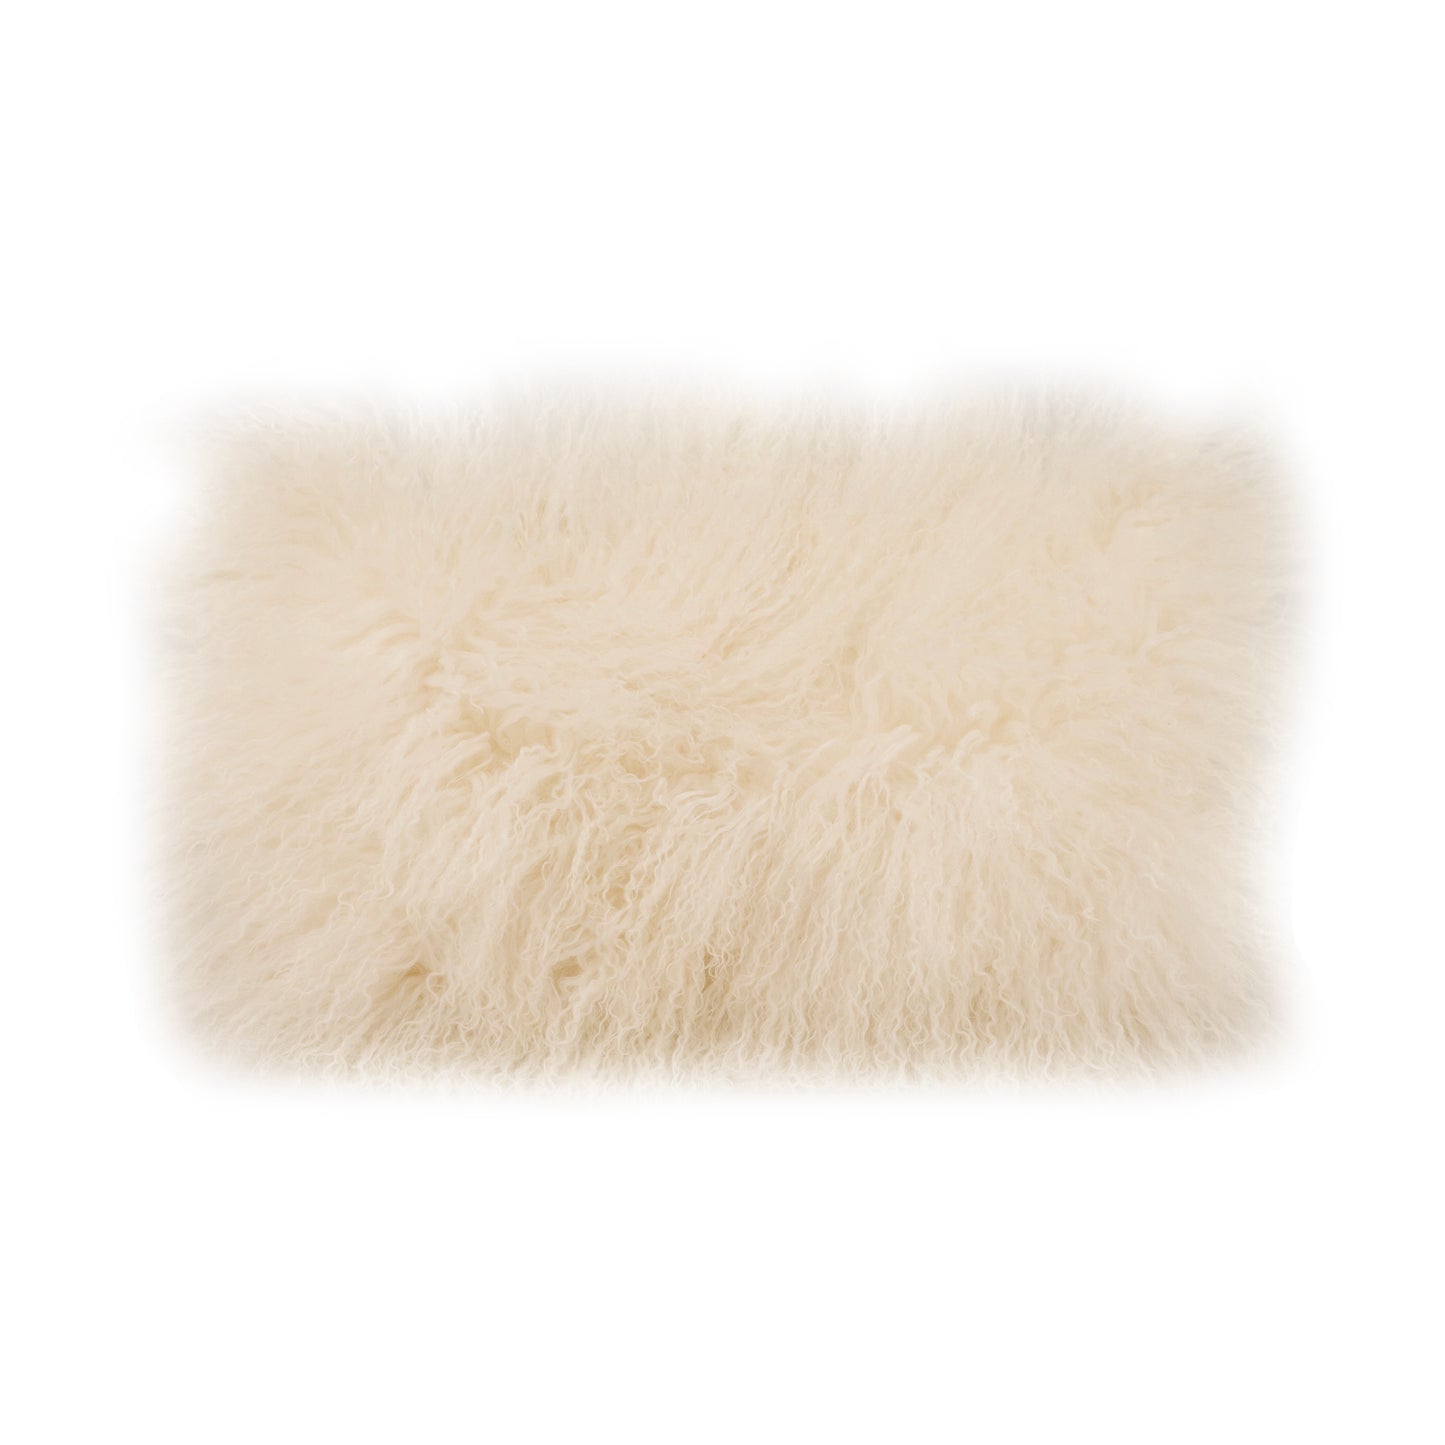 Lamb Fur Pillow Rectangular Cream